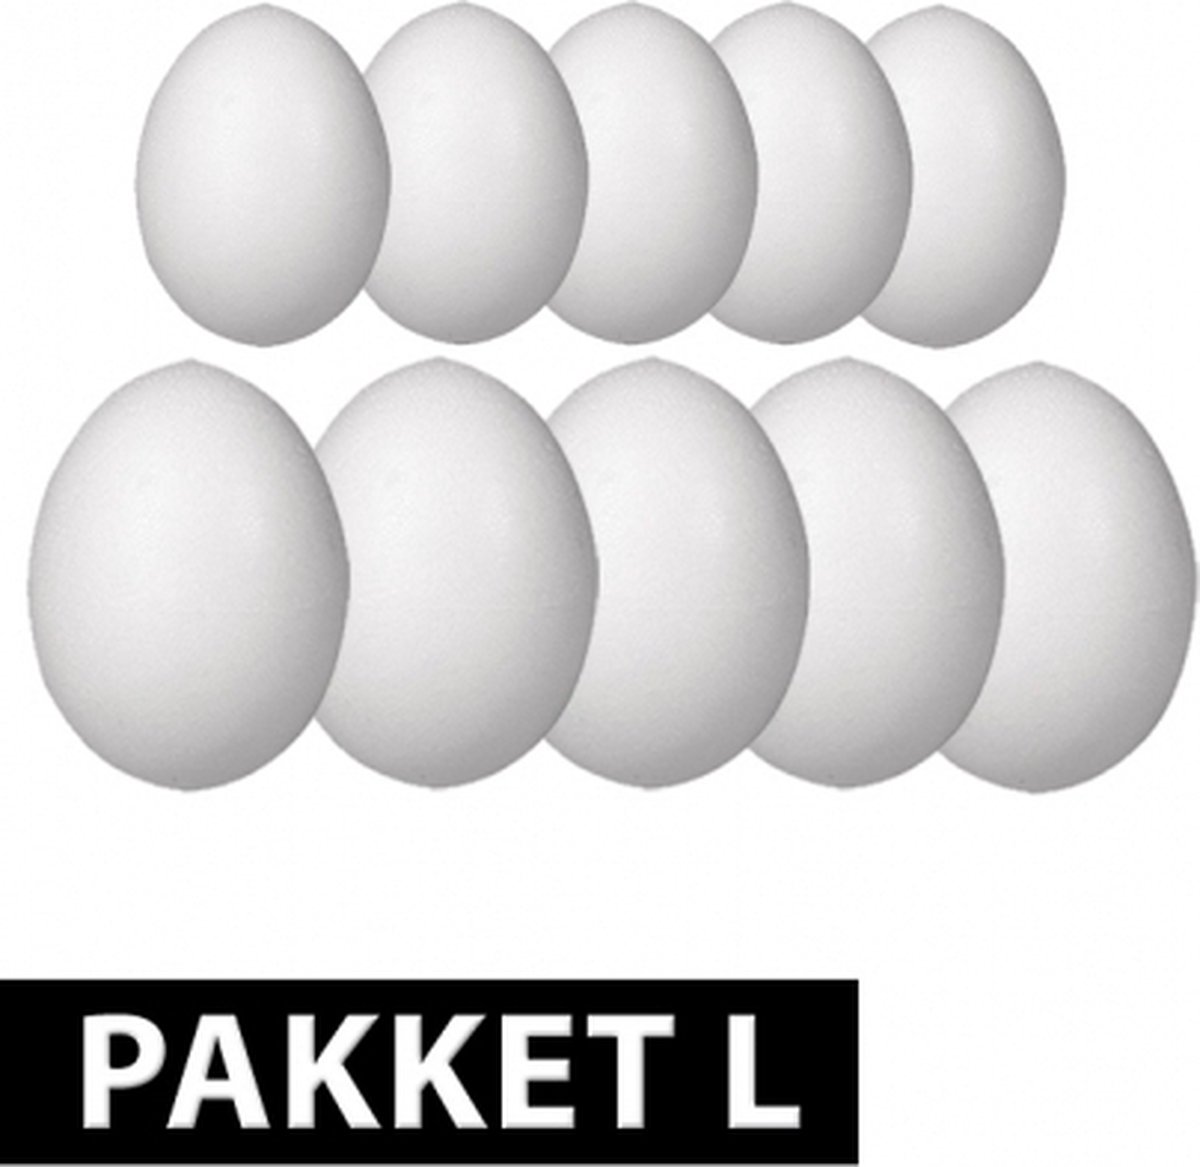 Piepschuim eieren pakket 10 stuks groot | bol.com